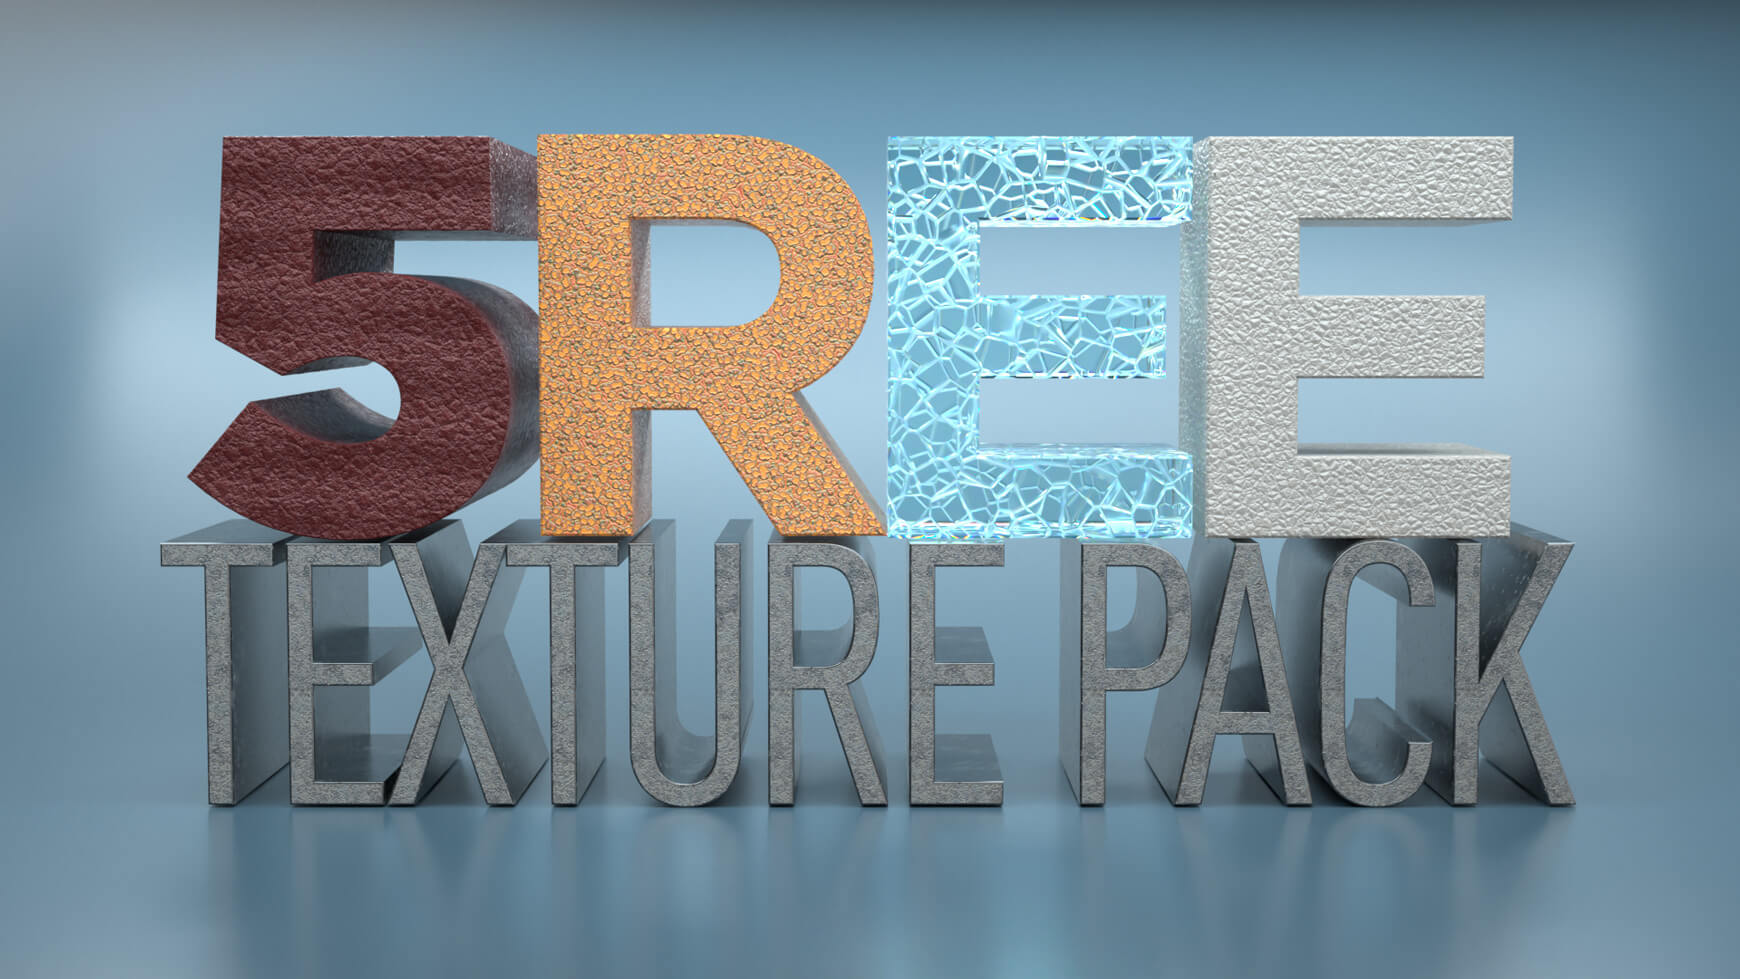 Octane Texture Pack 3 Sampler Cinema 4D Material Texture